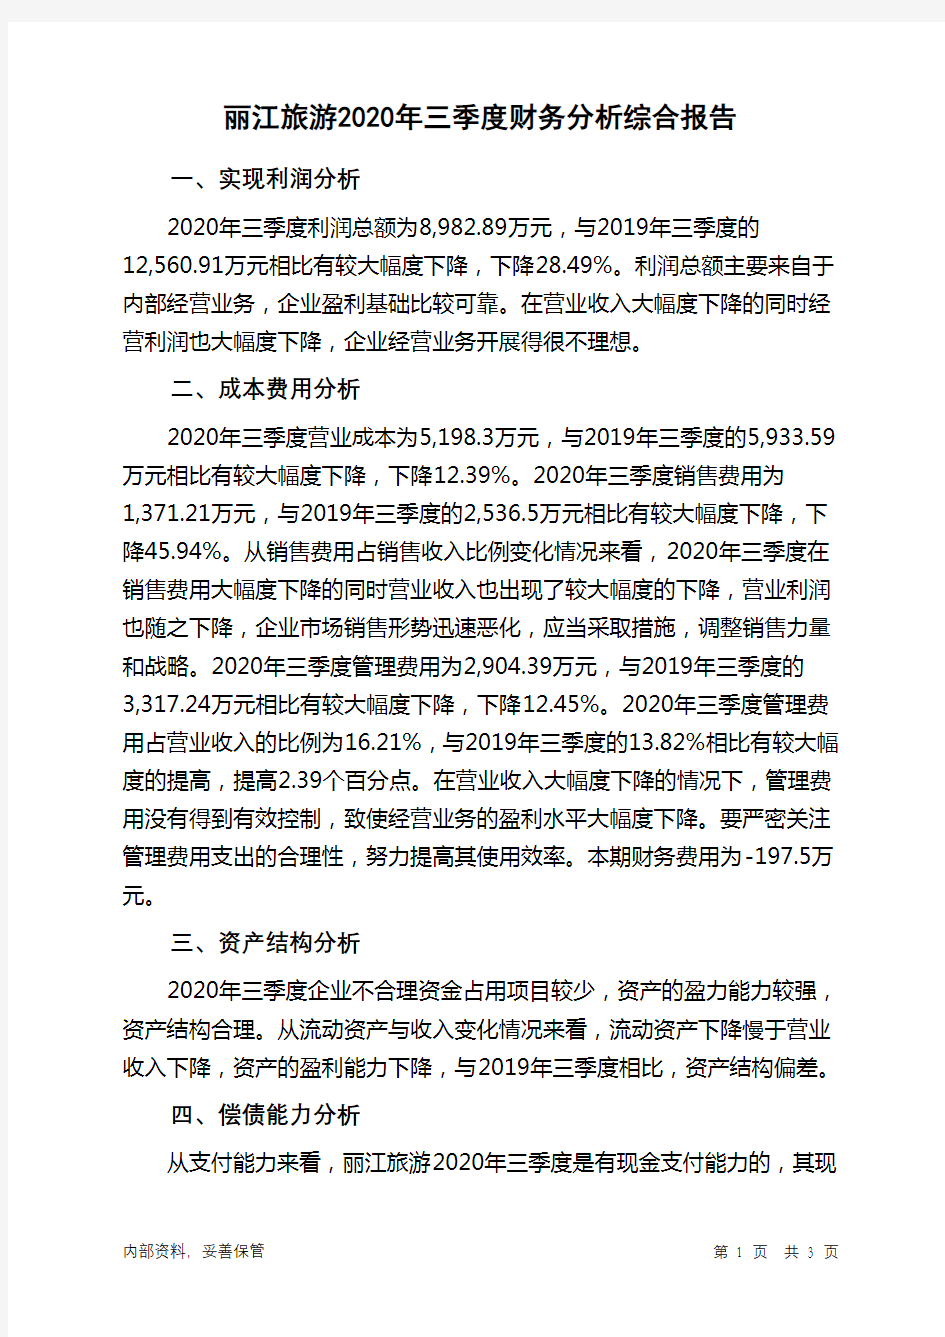 丽江旅游2020年三季度财务分析结论报告